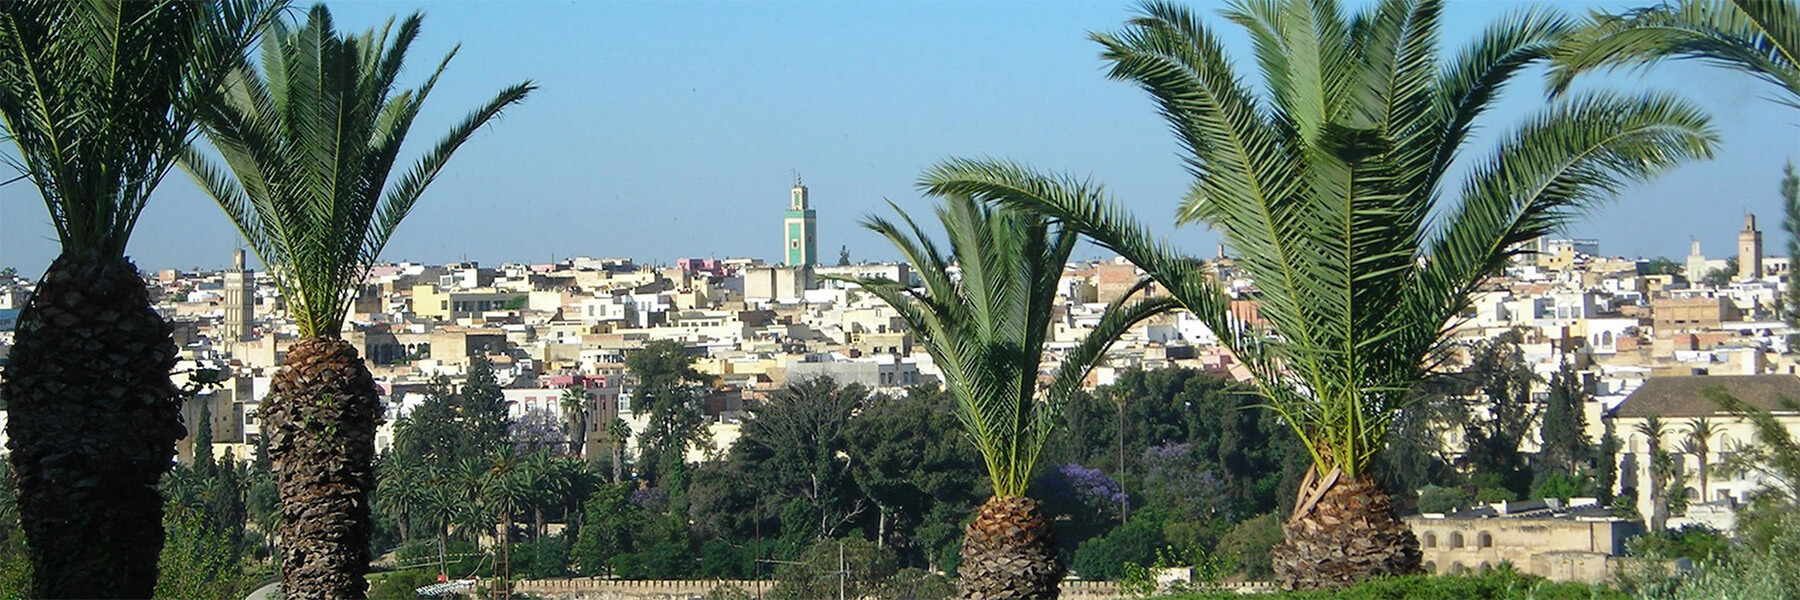 Skyline of Meknes Medina